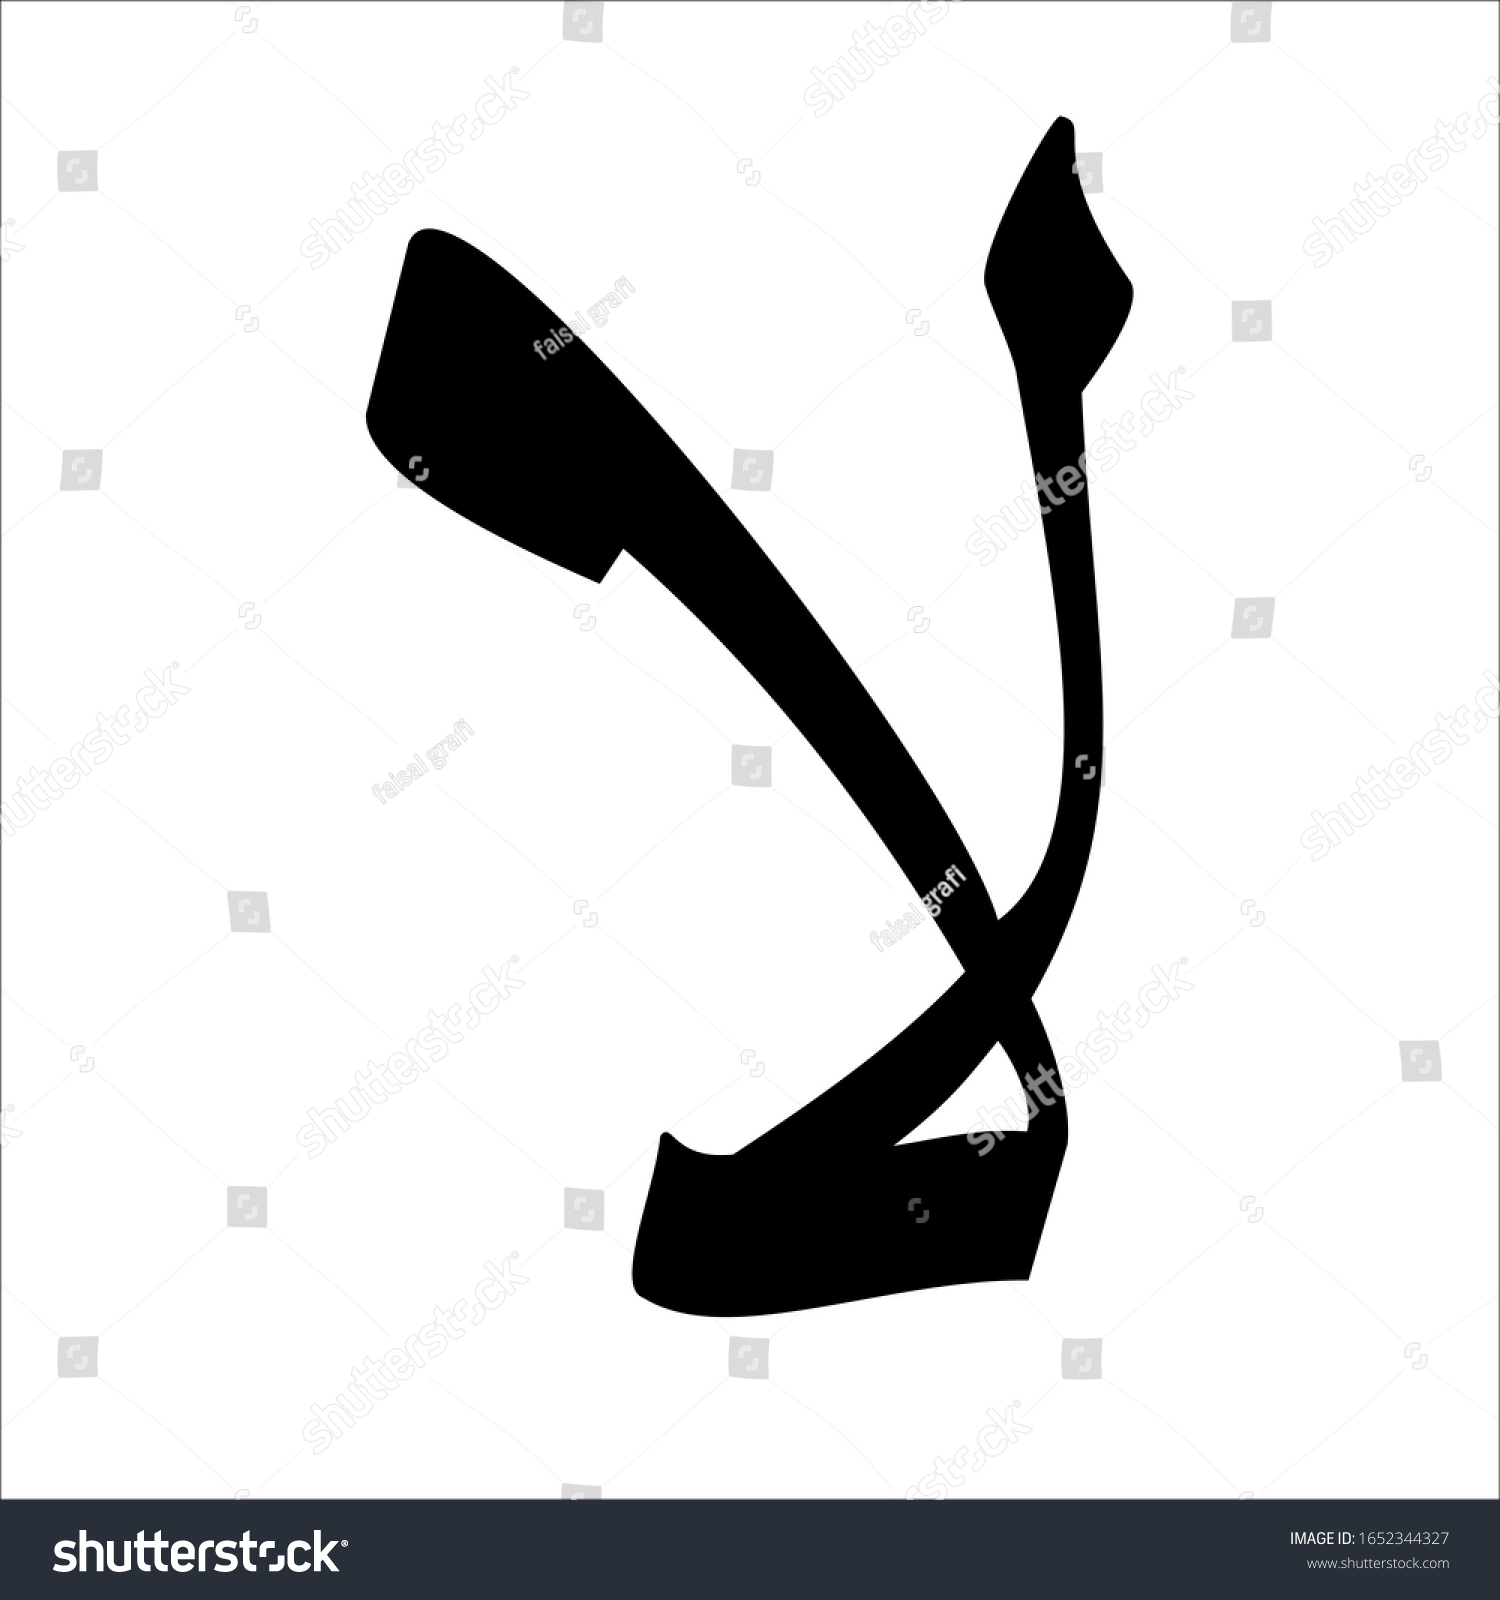 Font huruf hijaiyah